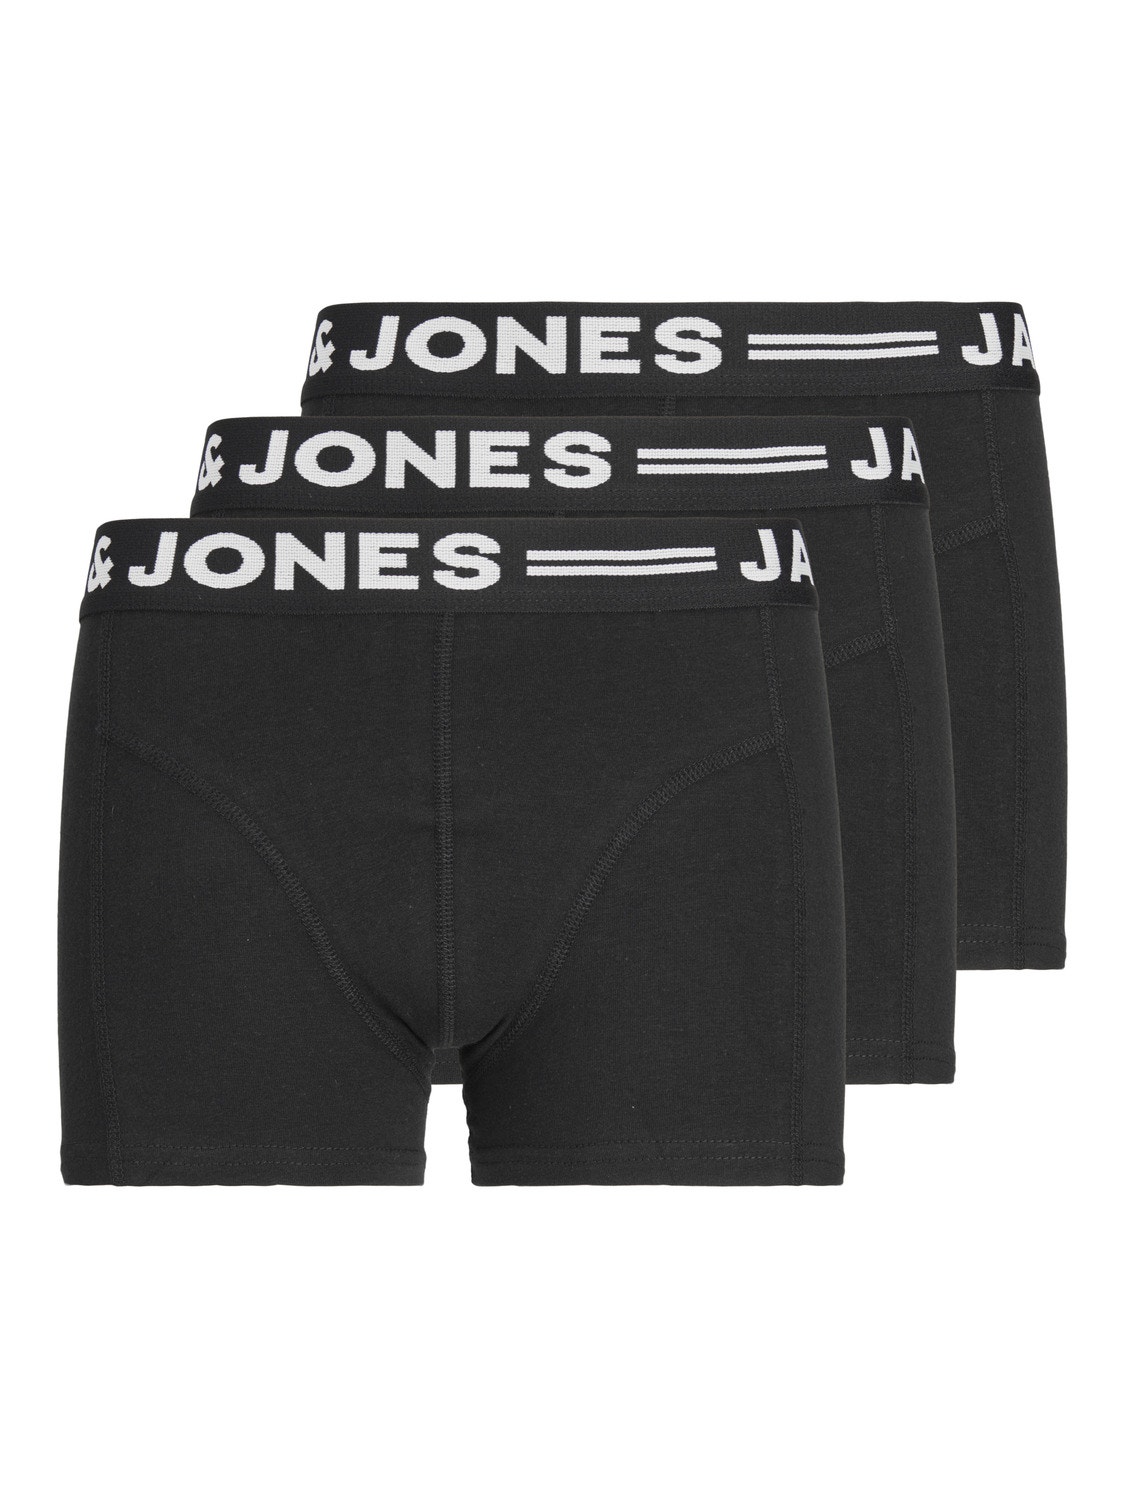 Jack & Jones 3-pack Trunks For boys -Black - 12149293